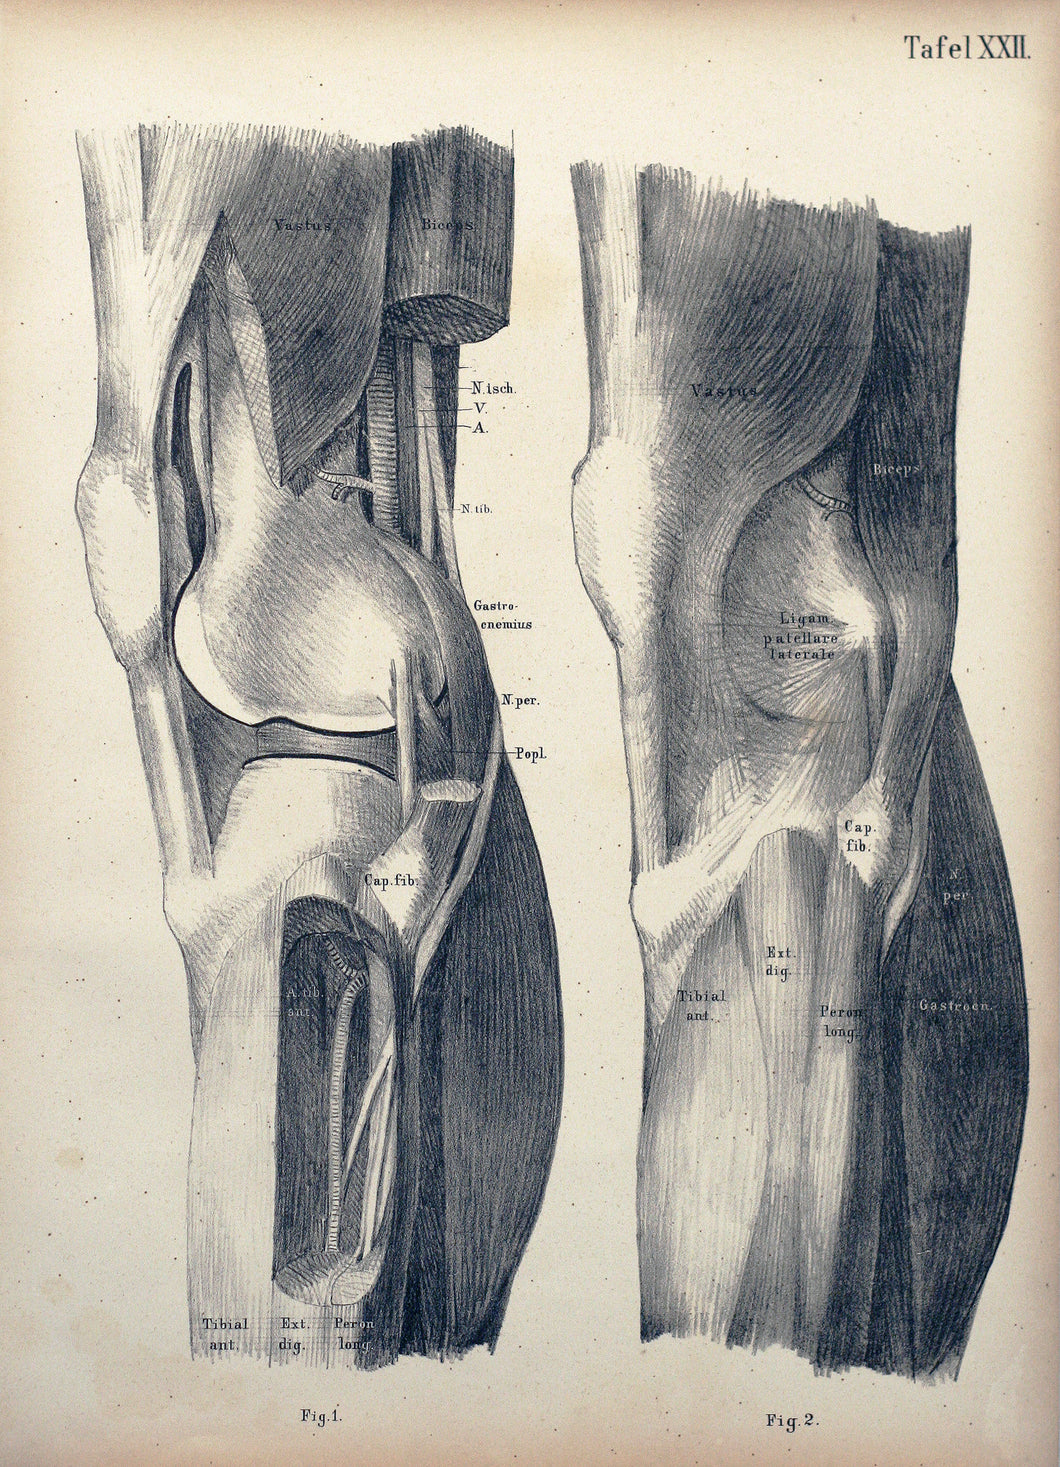 Tafel XXII - Oberschenkel und Knie von hinten